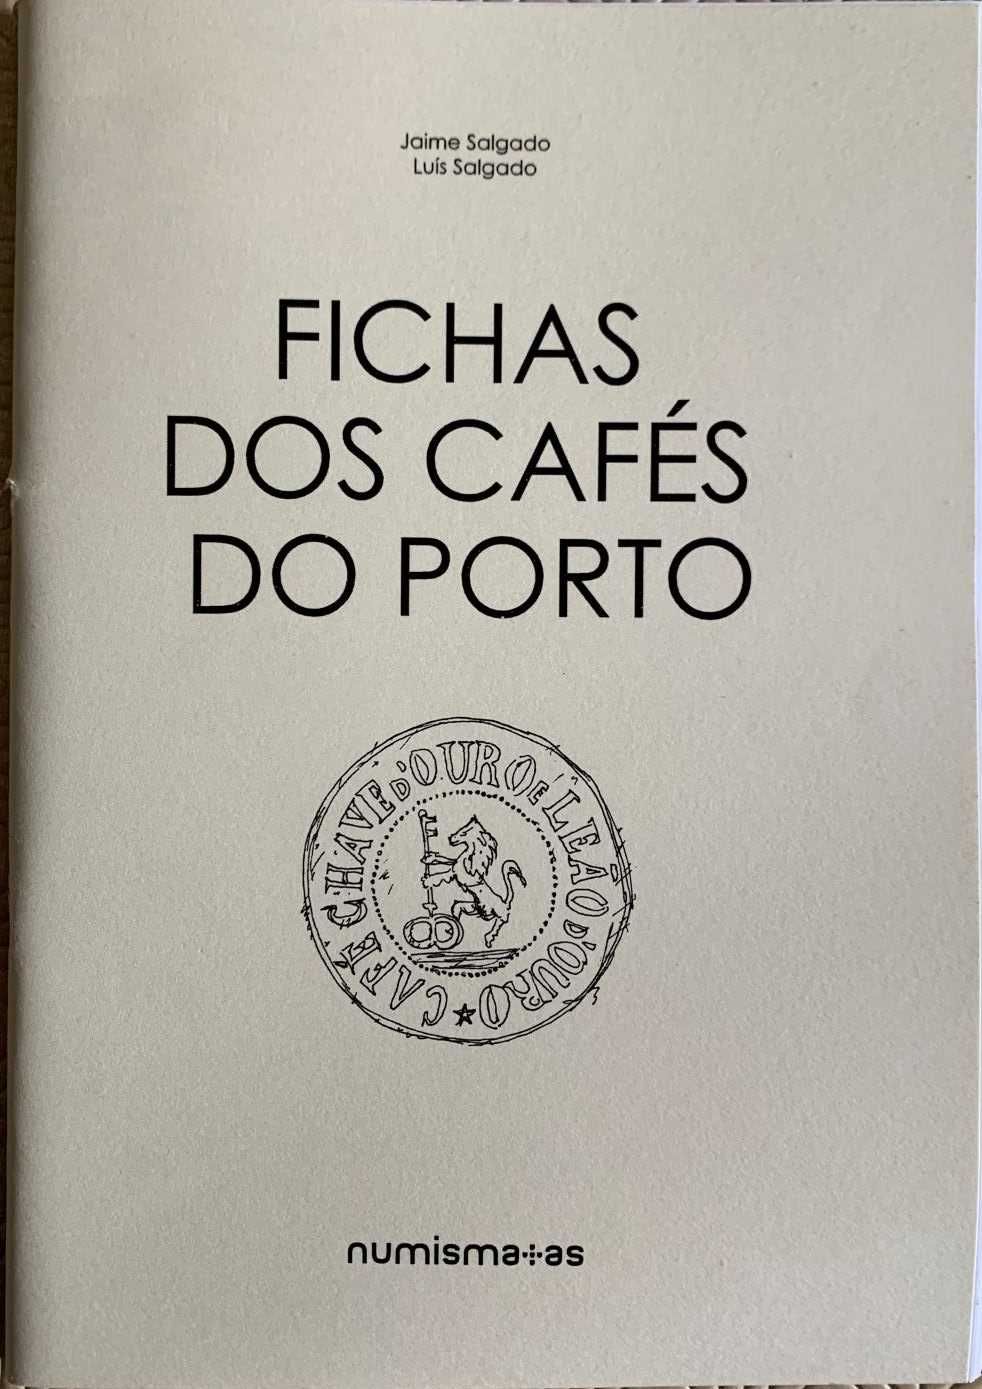 Numismática - Caderno: Fichas dos Cafés do Porto